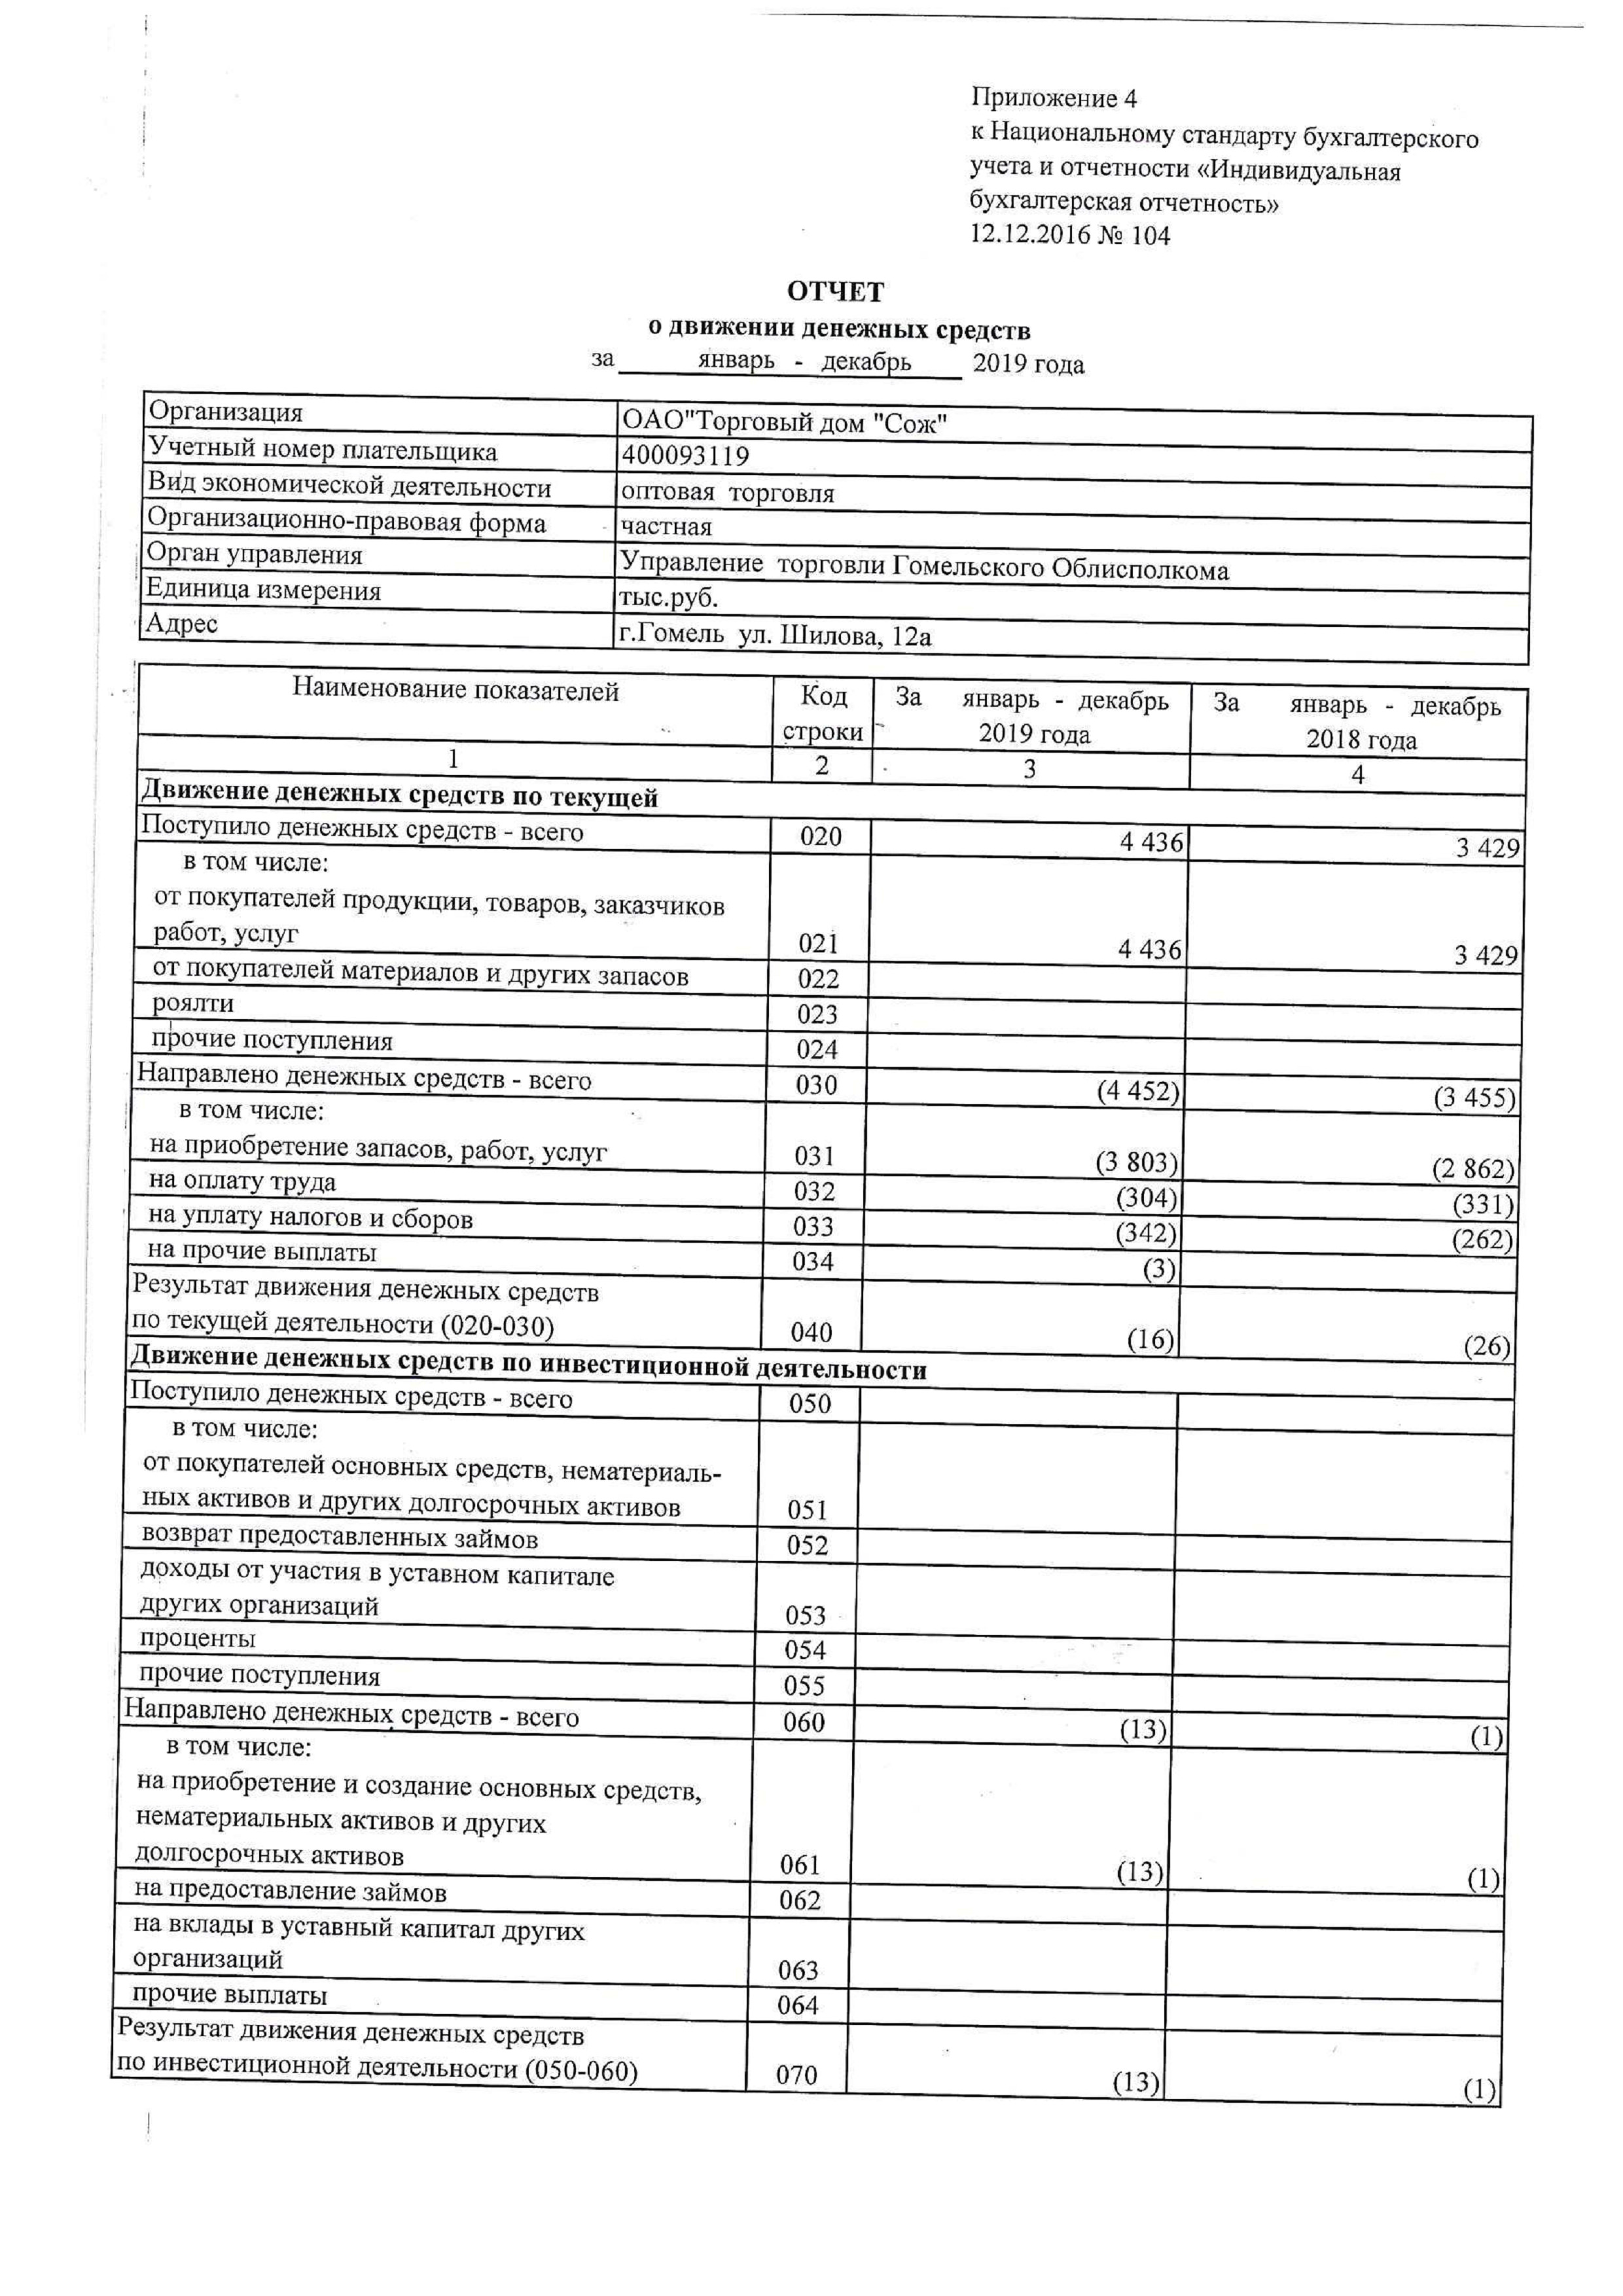 ОАО Торговый дом Сож - Отчет о движении денежных средств январь-декабрь 2019